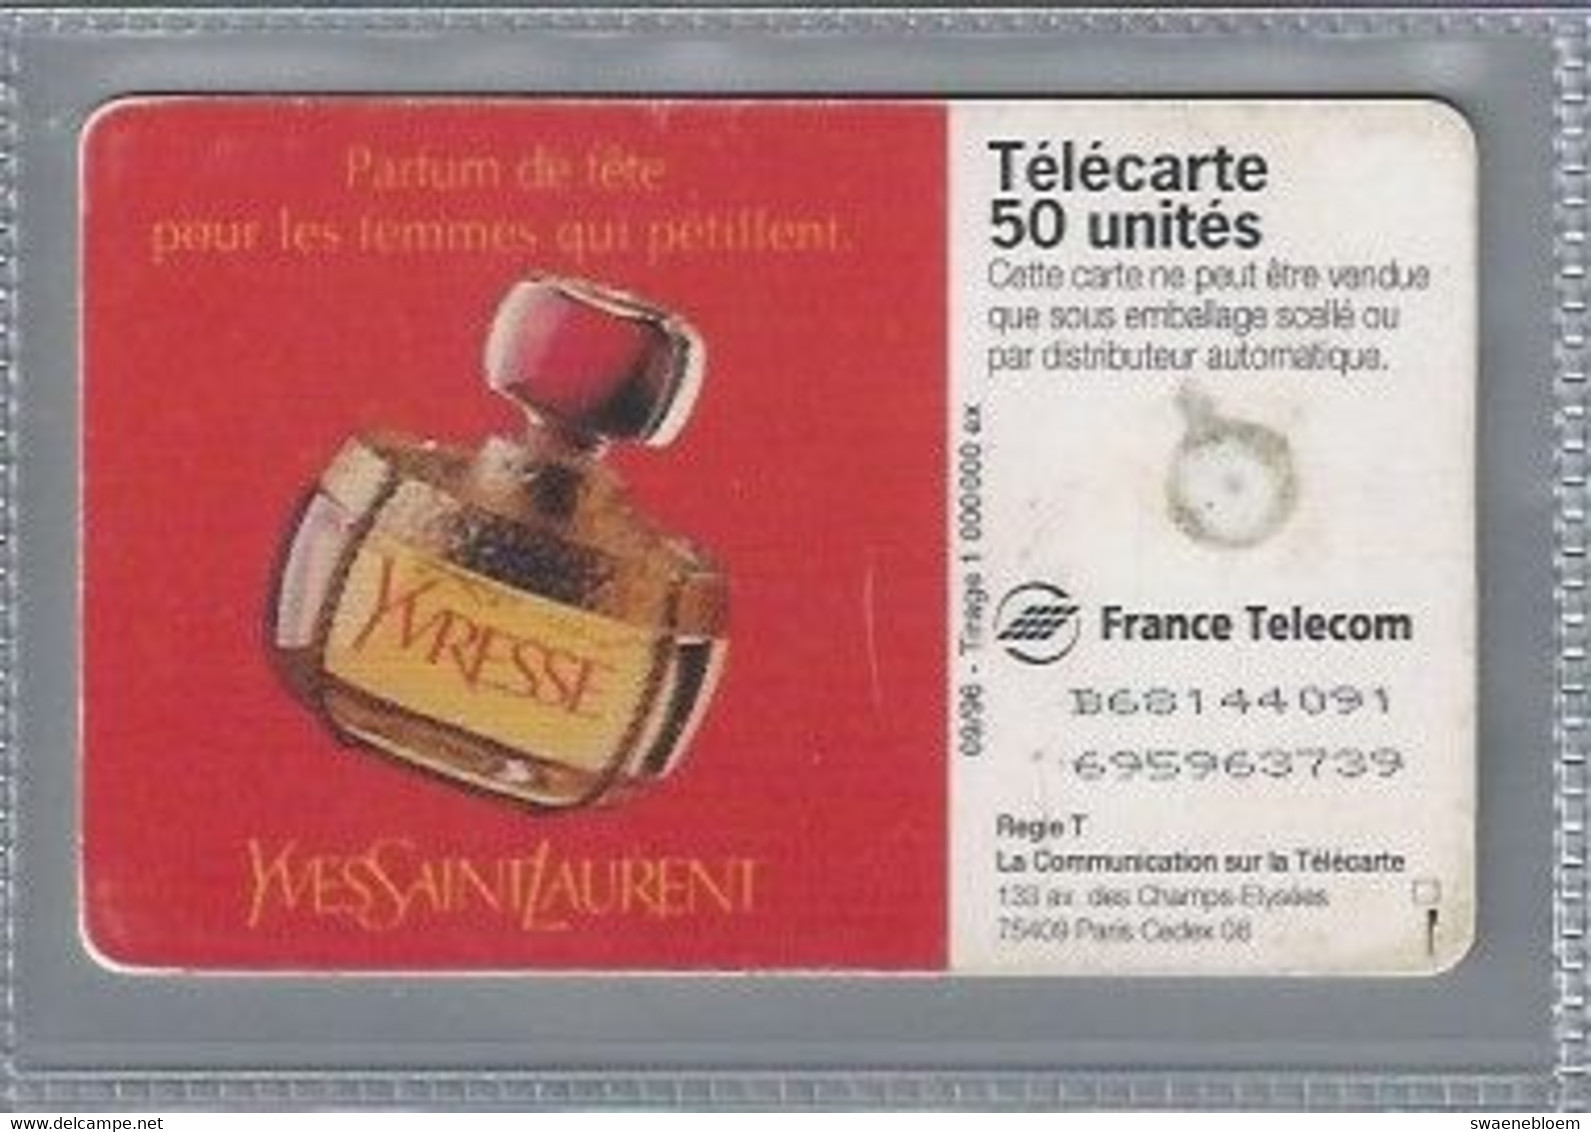 FR.- France Telecom. Télécarte. PARFUM YVRESSE. YVES SAINT LAURENT. .50 Unités. - Perfume